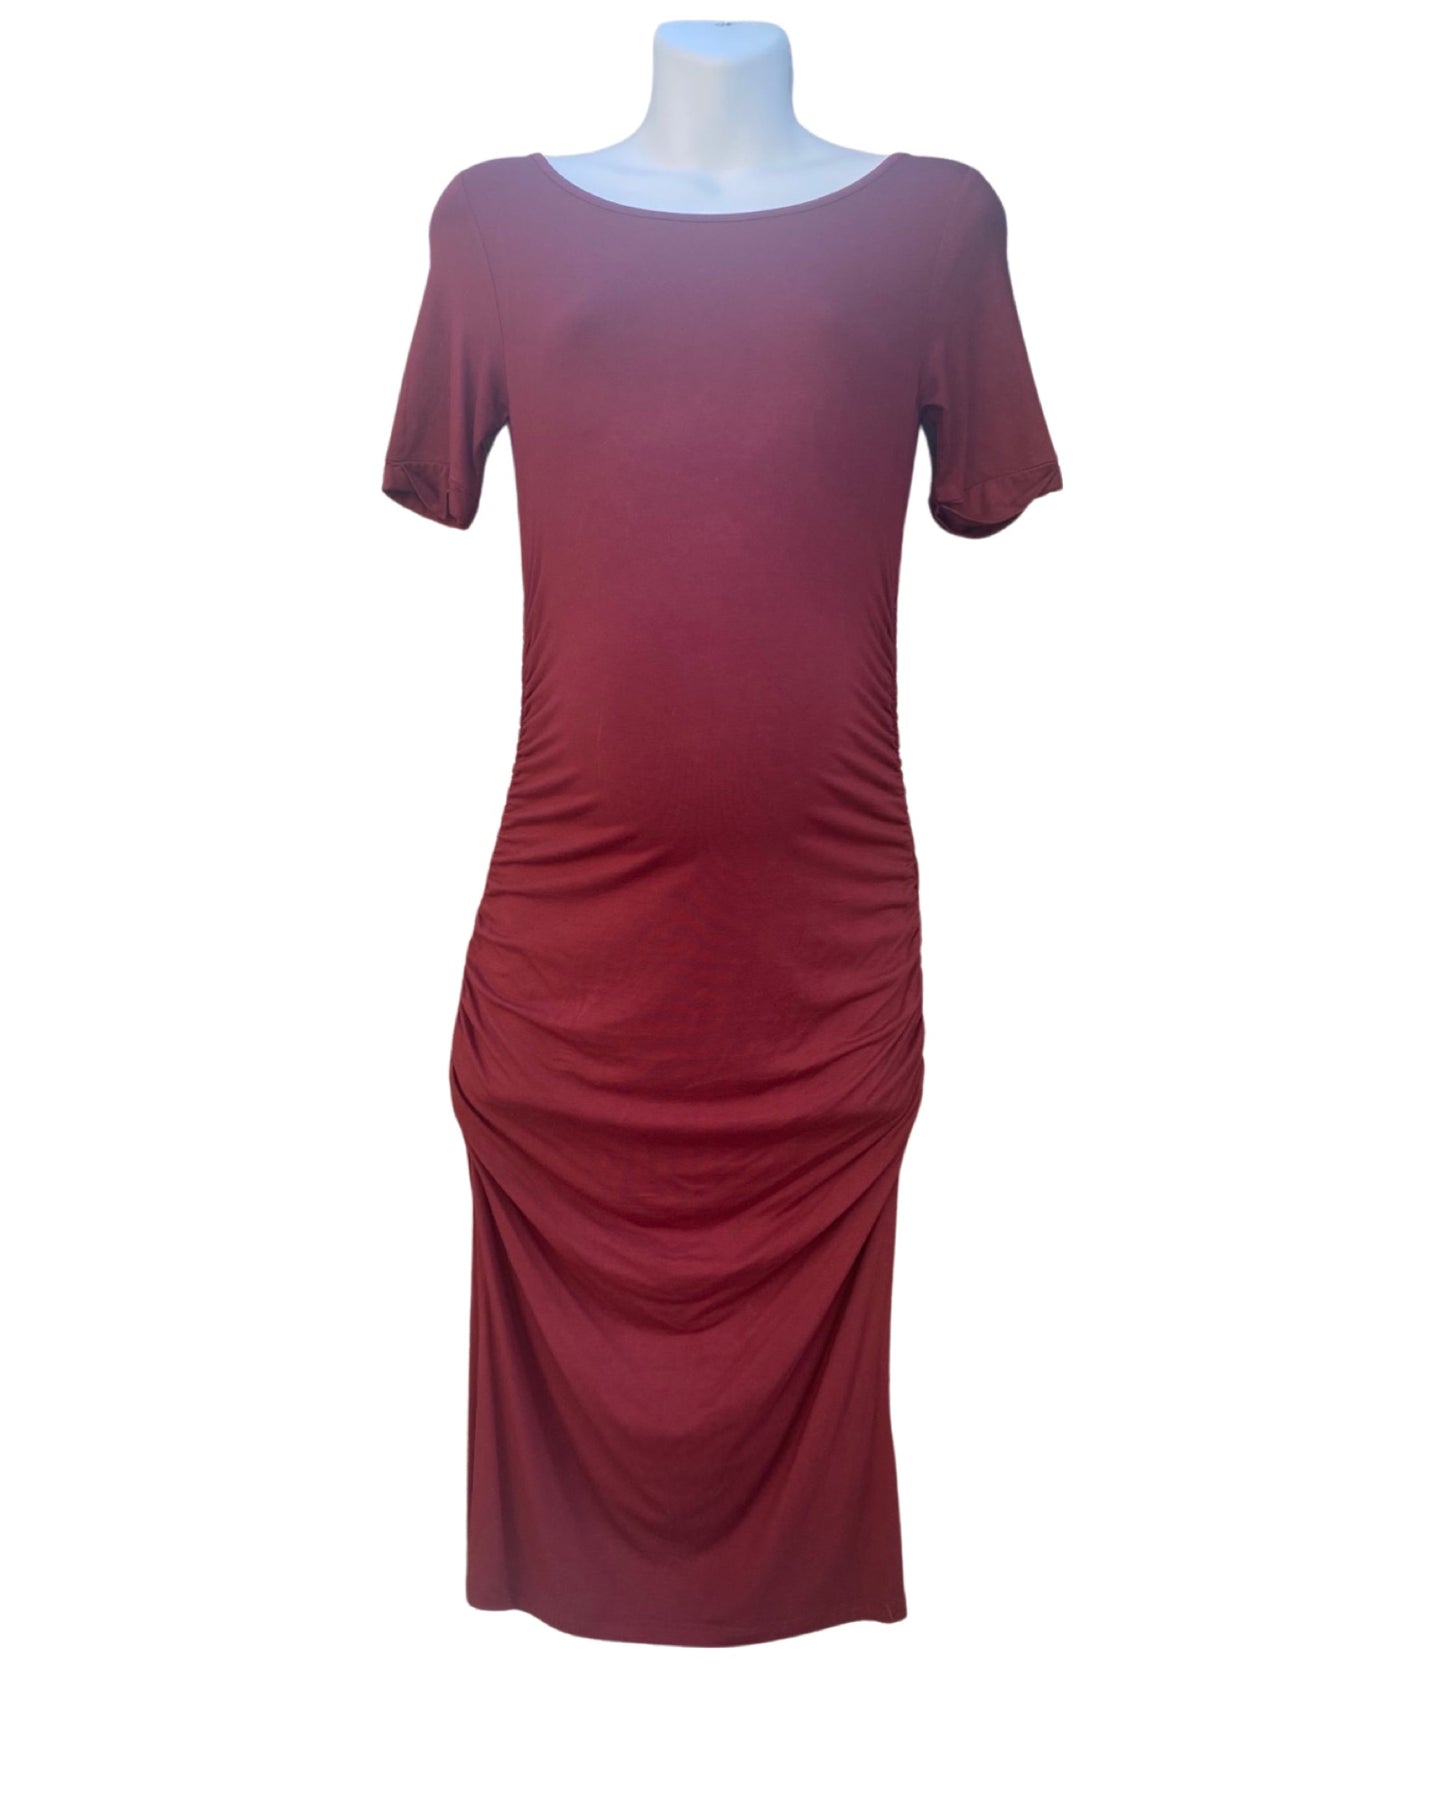 Isabella Oliver burgundy jersey dress (size 10)